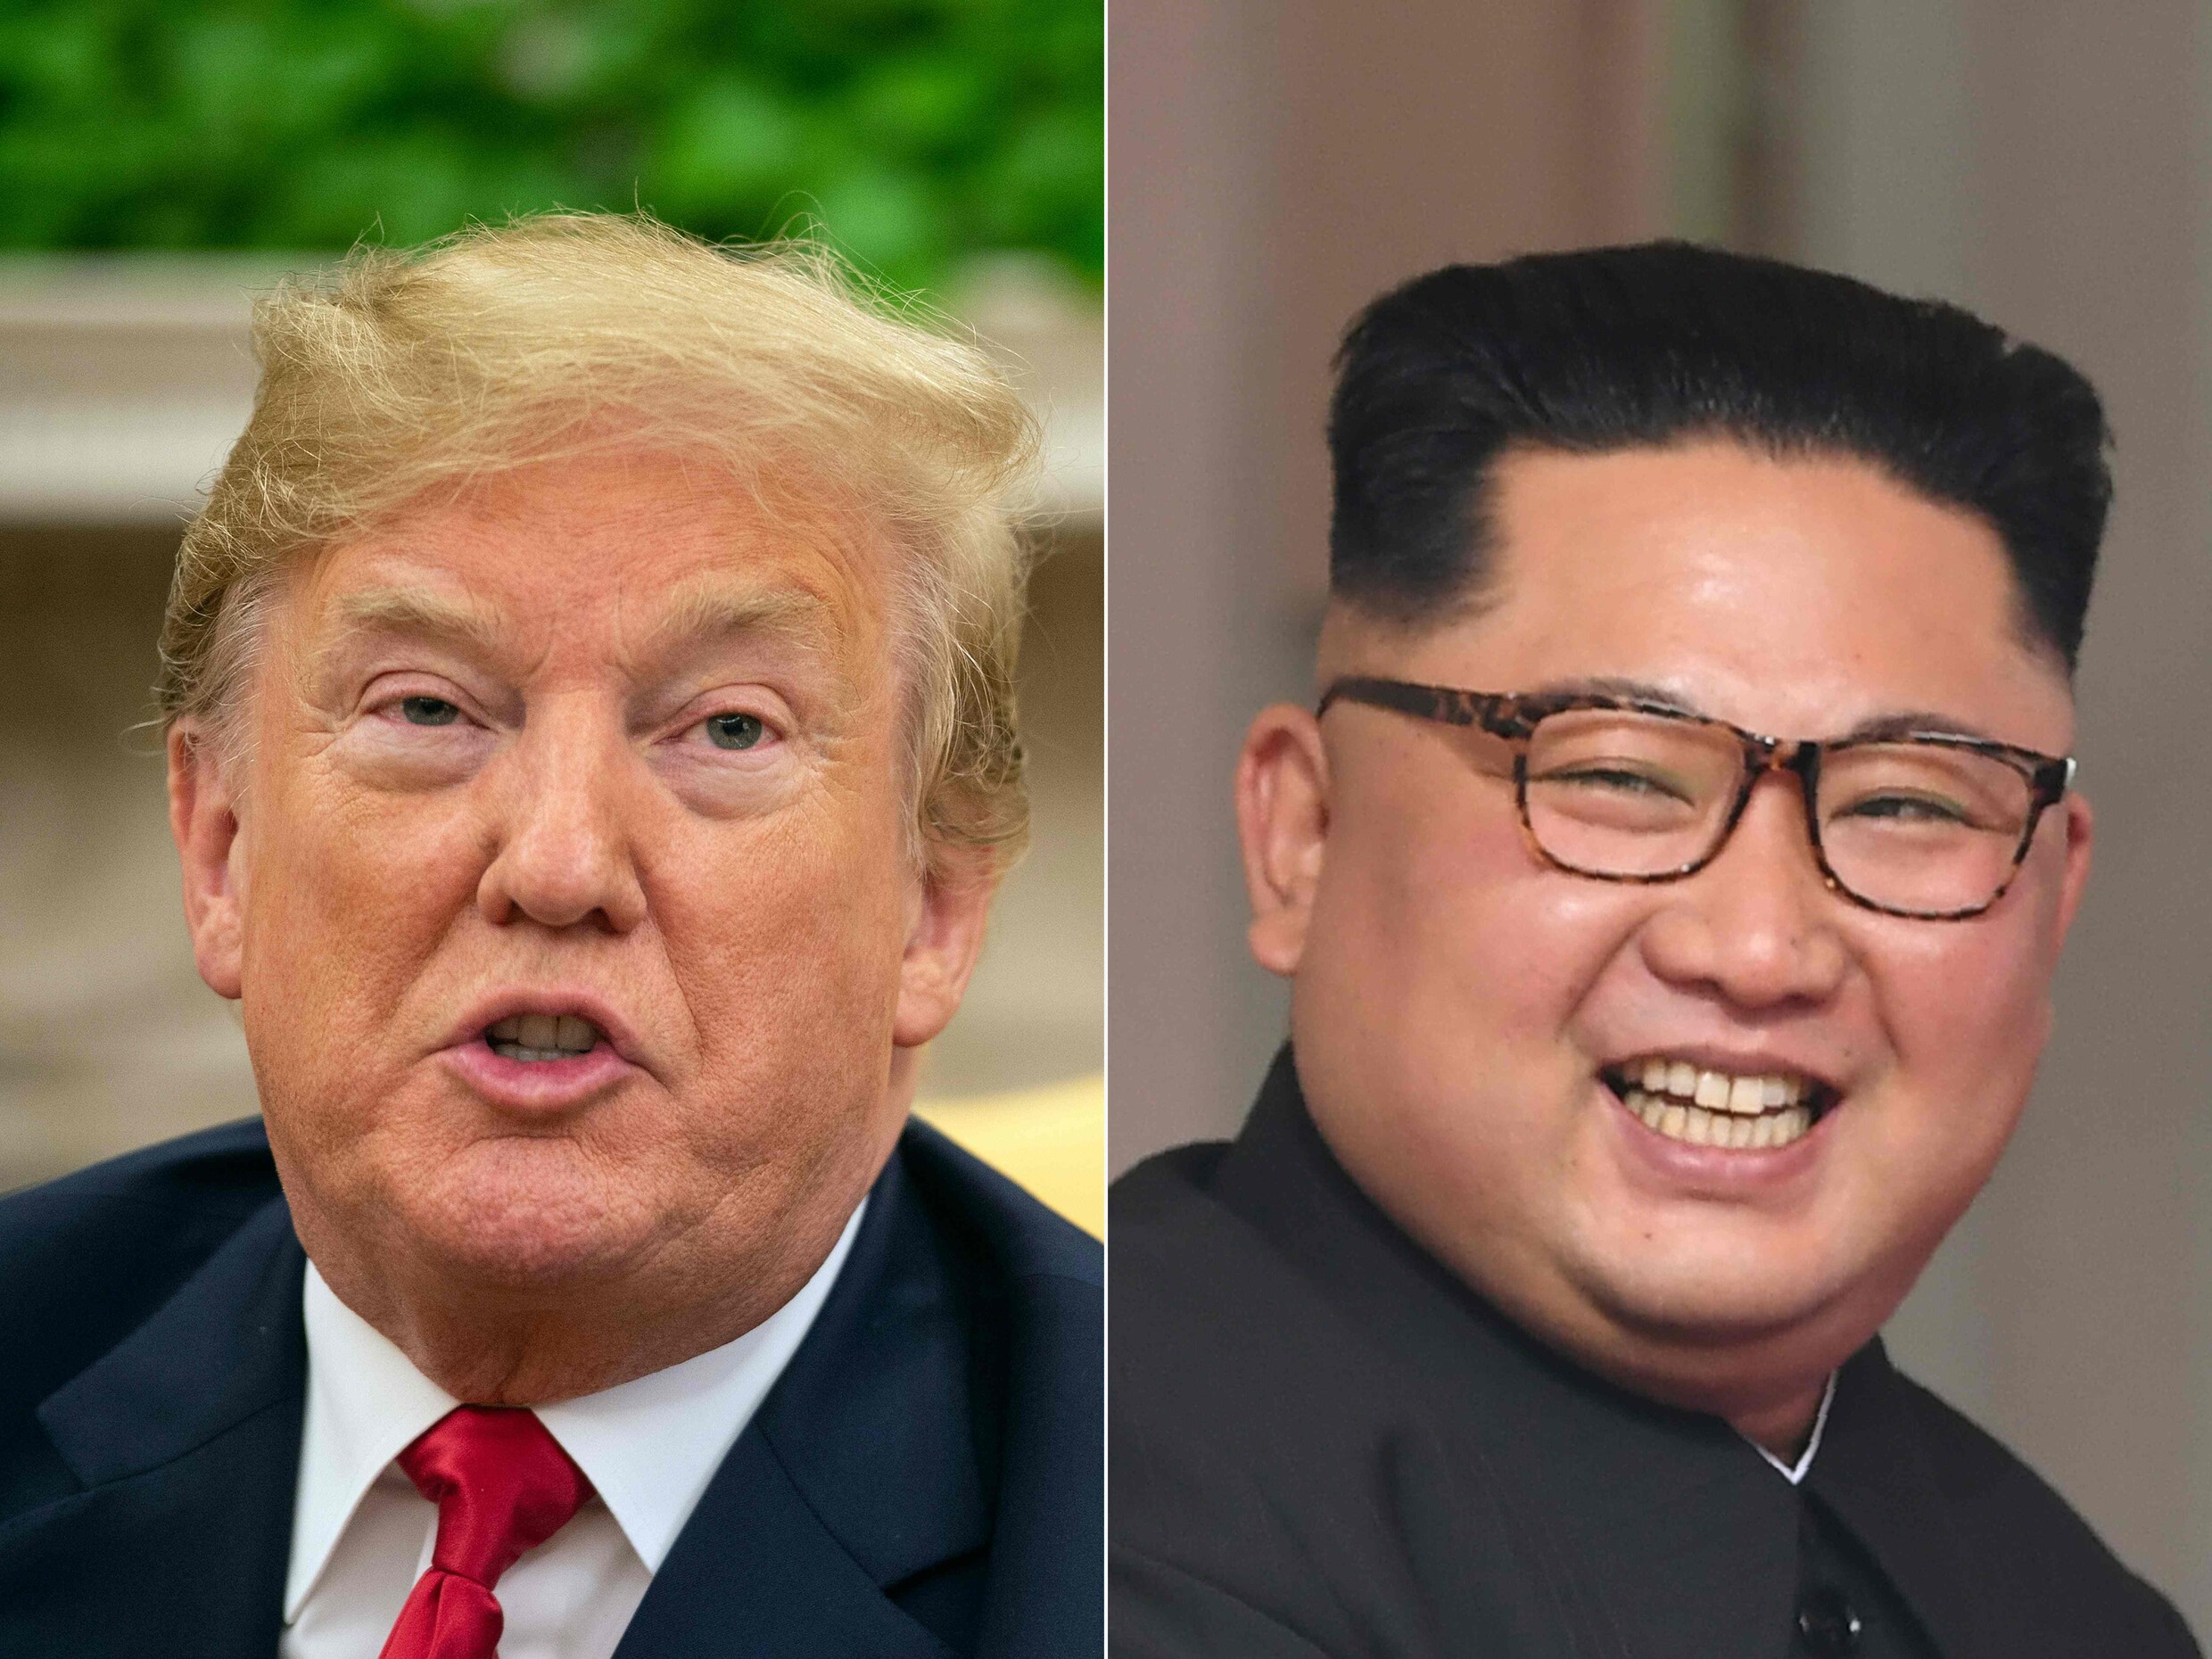 Washington Post: "Achter de schermen is Trump ronduit gefrustreerd over Kim Jong-un"